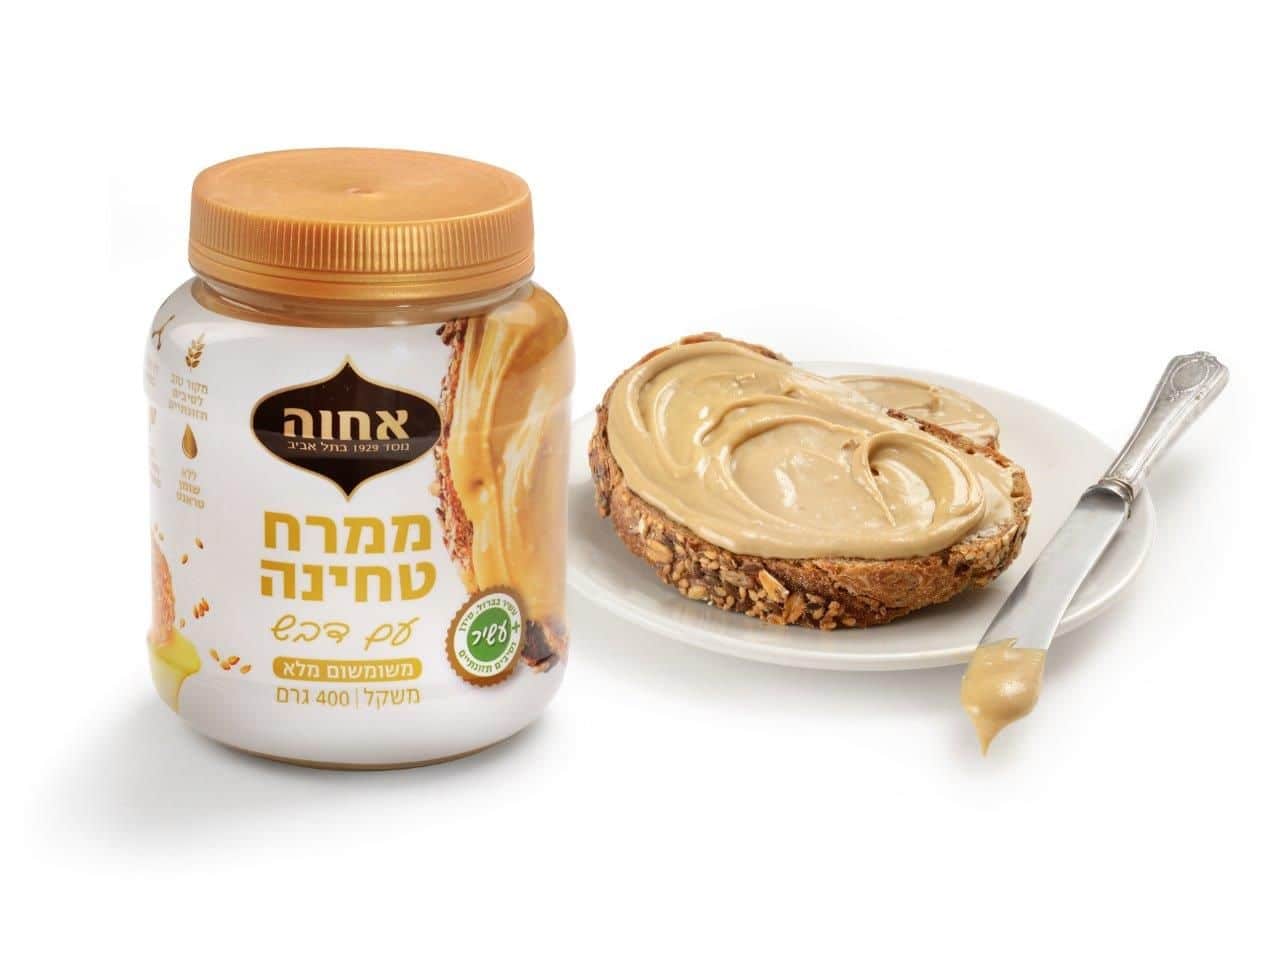 לראשונה מוצע בישראל ממרח טחינה עם דבש המתאים לשימוש כממרח מתוק בכריכים, לעוגות ועוגיות. צילום יעל האן